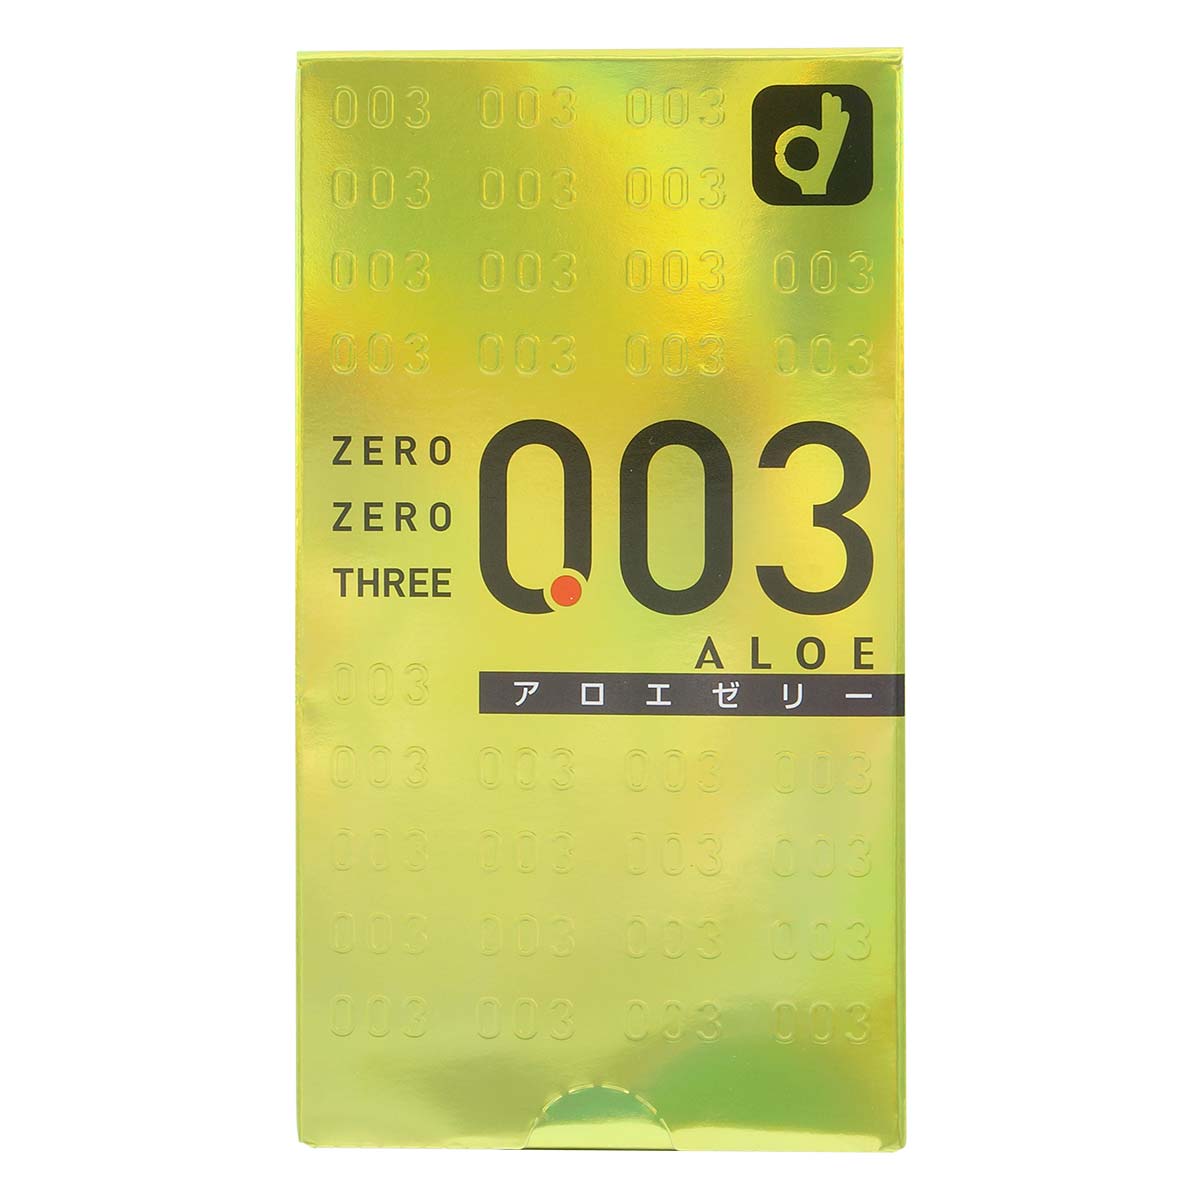 Zero Zero Three 0.03 Aloe (Japan Edition) 10's Pack Latex Condom-thumb_2